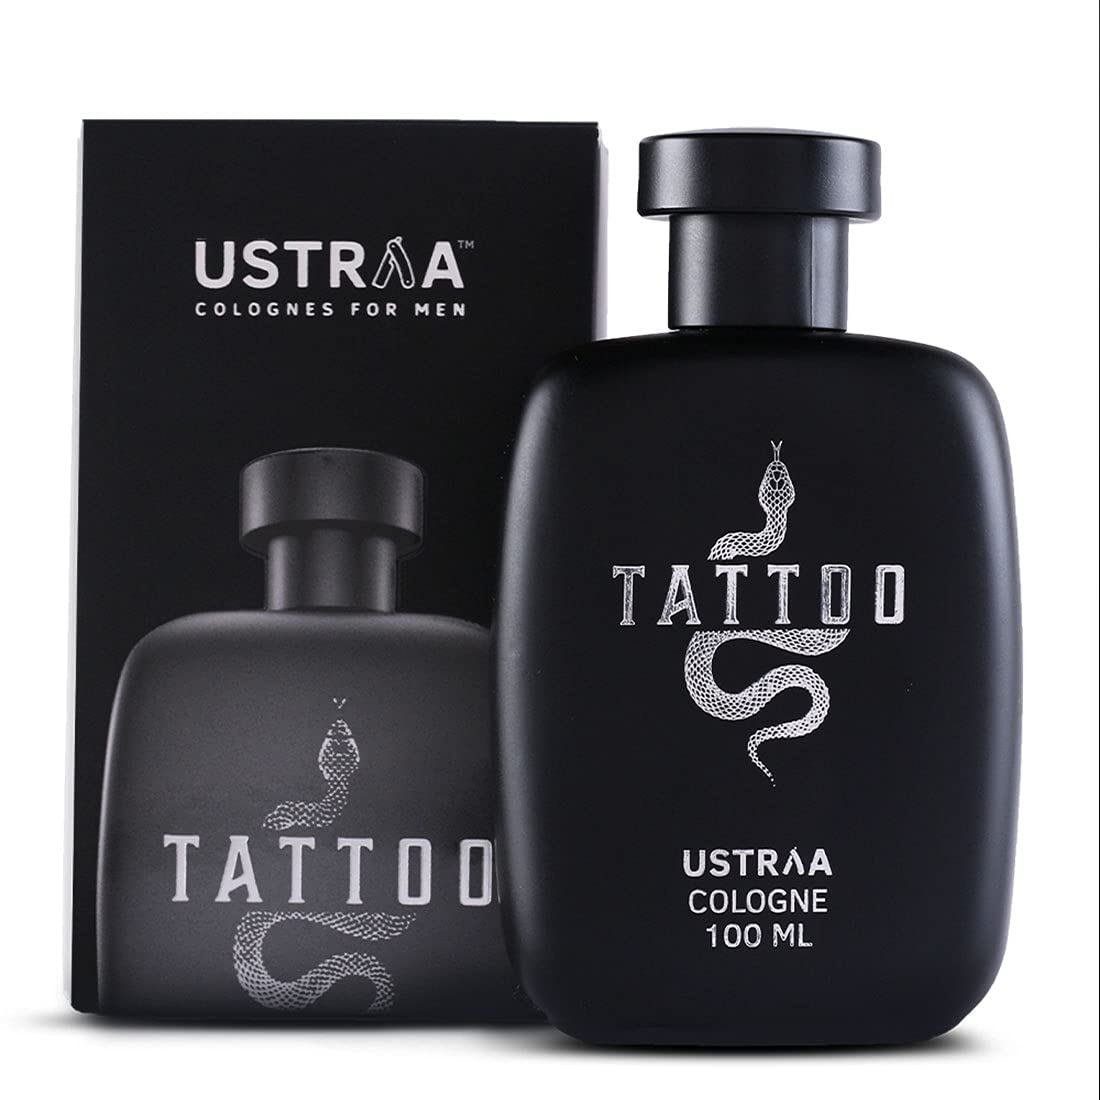 Ustraa Cologne - Tattoo for Men, 100 Ml